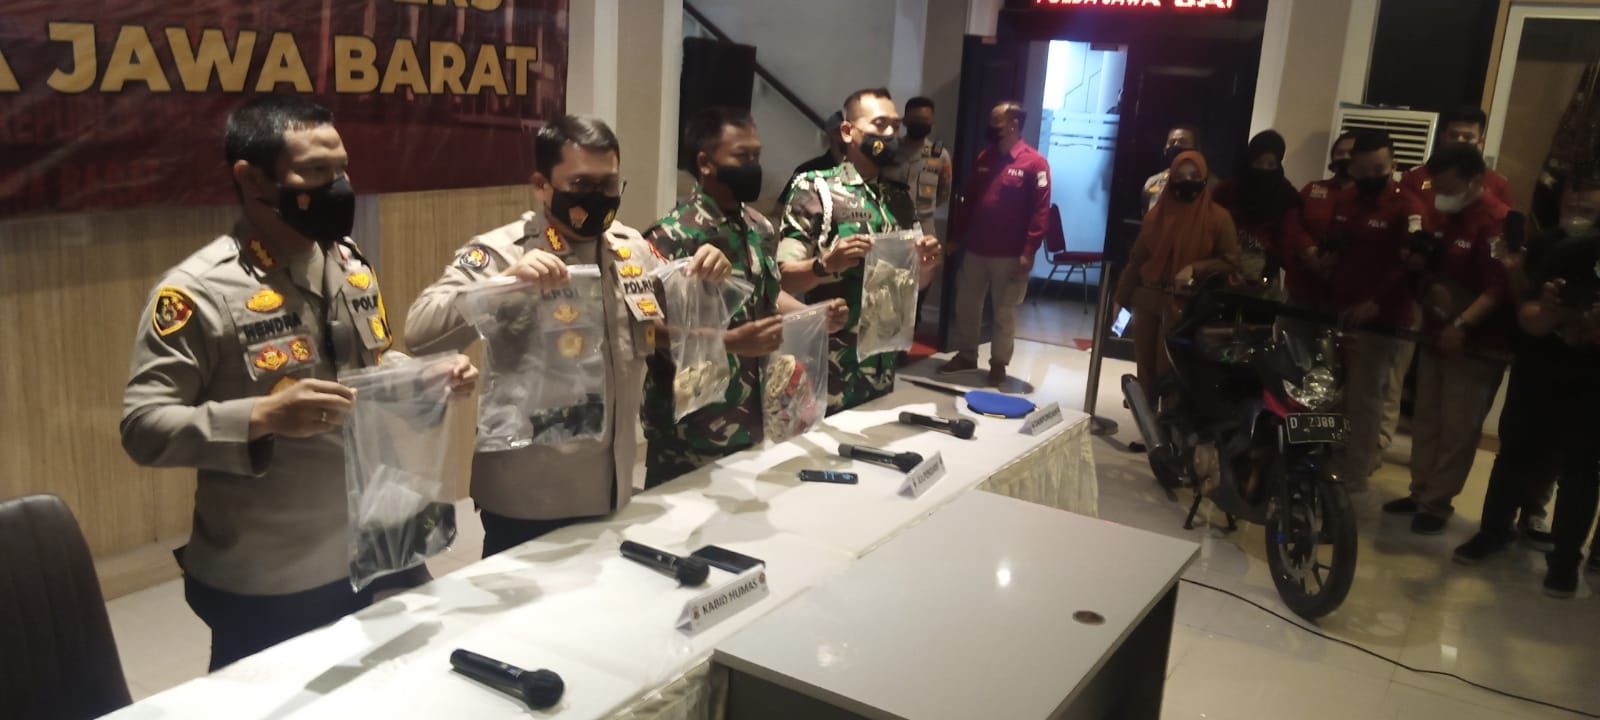 Kabid Humas Polda Jabar Kombes Pol Erdi A. Chaniago memperlihatkan barang bukti kasus tabrak lari di Nagreg, Kabupaten Bandung, hingga menewaskan dua sejoli, Handi Saputra dan Salsabila.